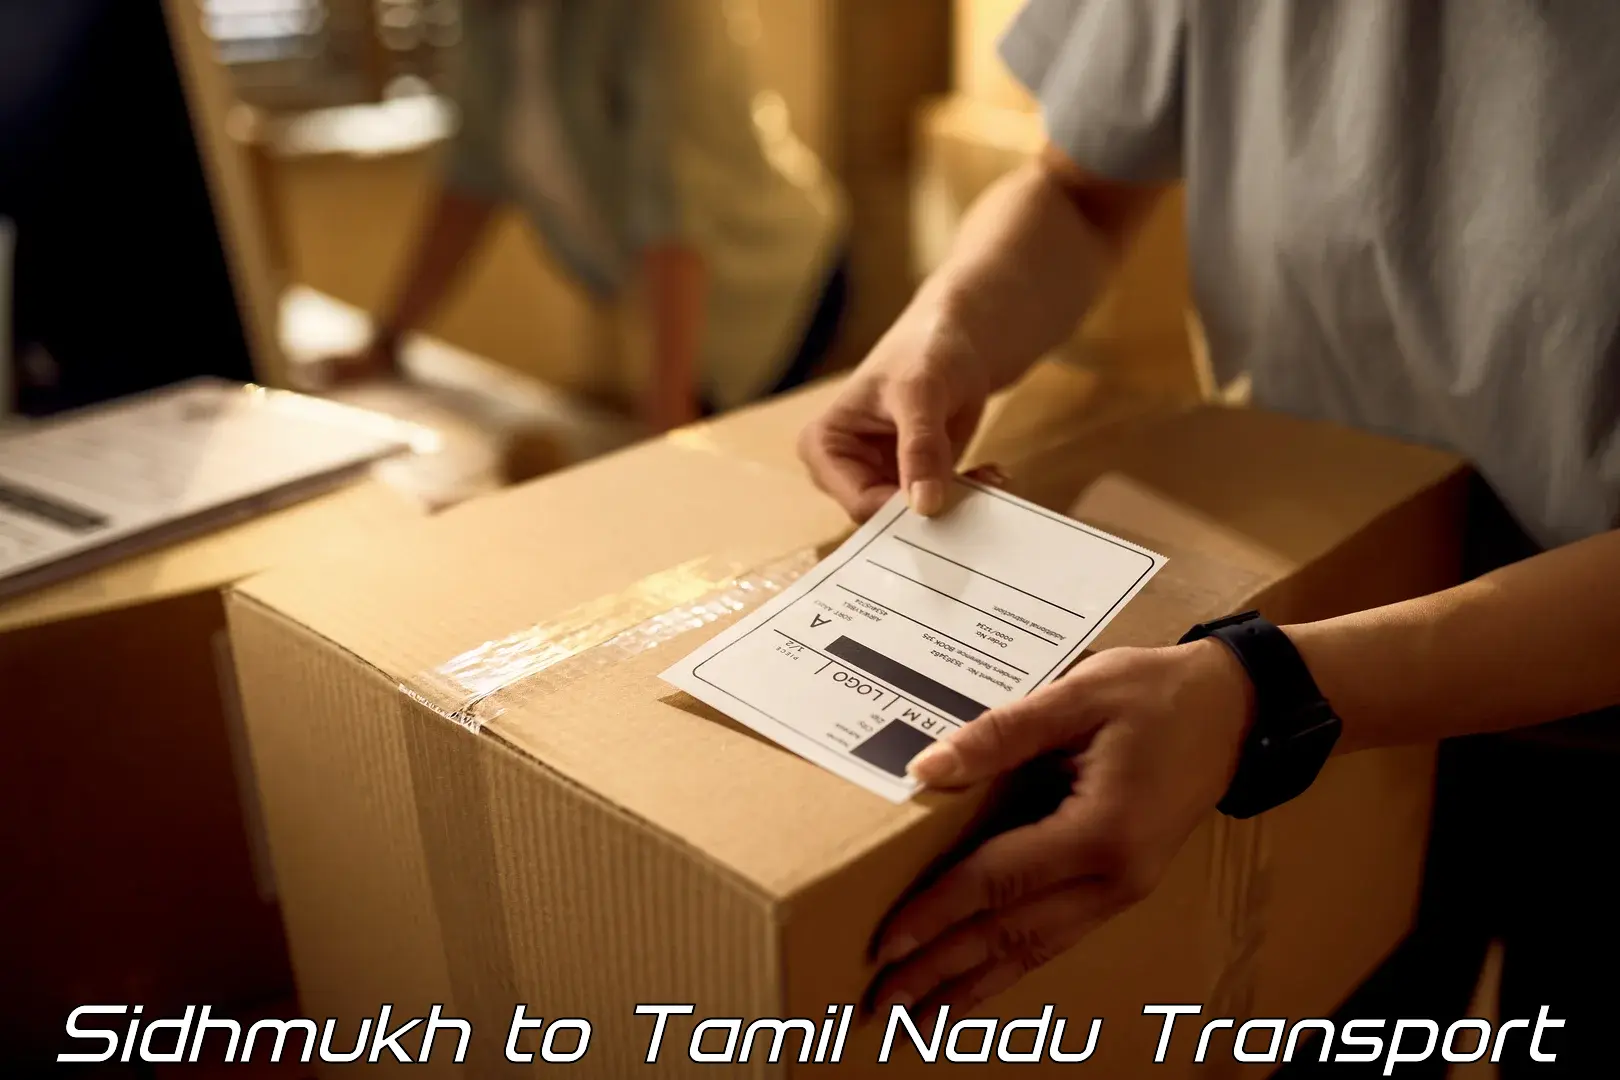 Furniture transport service Sidhmukh to Orathanadu